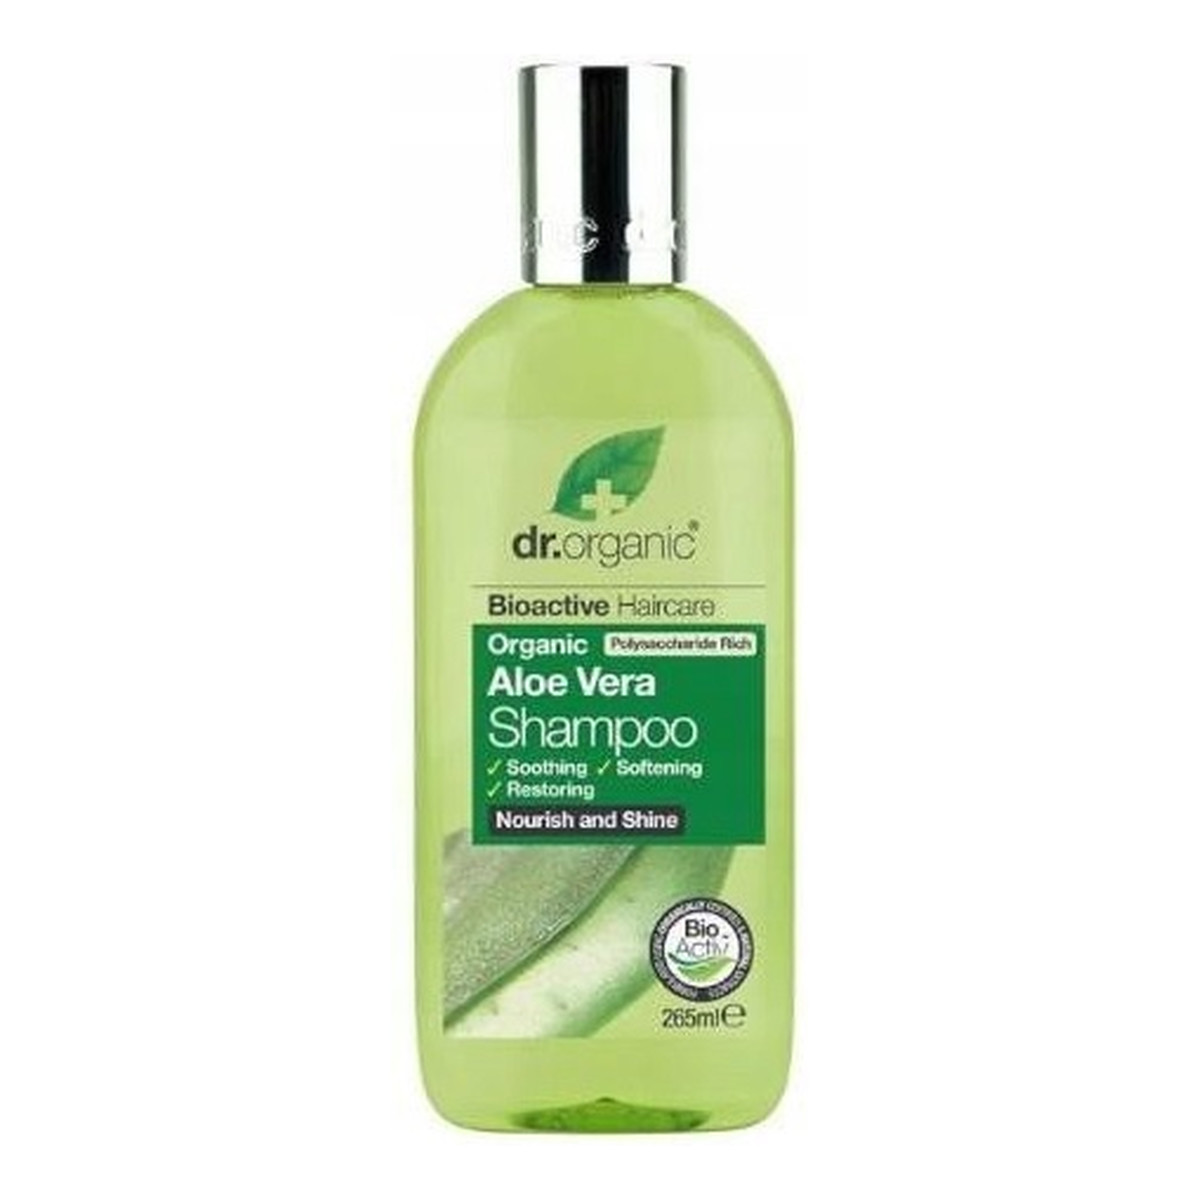 Dr.Organic Aloe vera shampoo szampon do włosów z aloesem 265ml